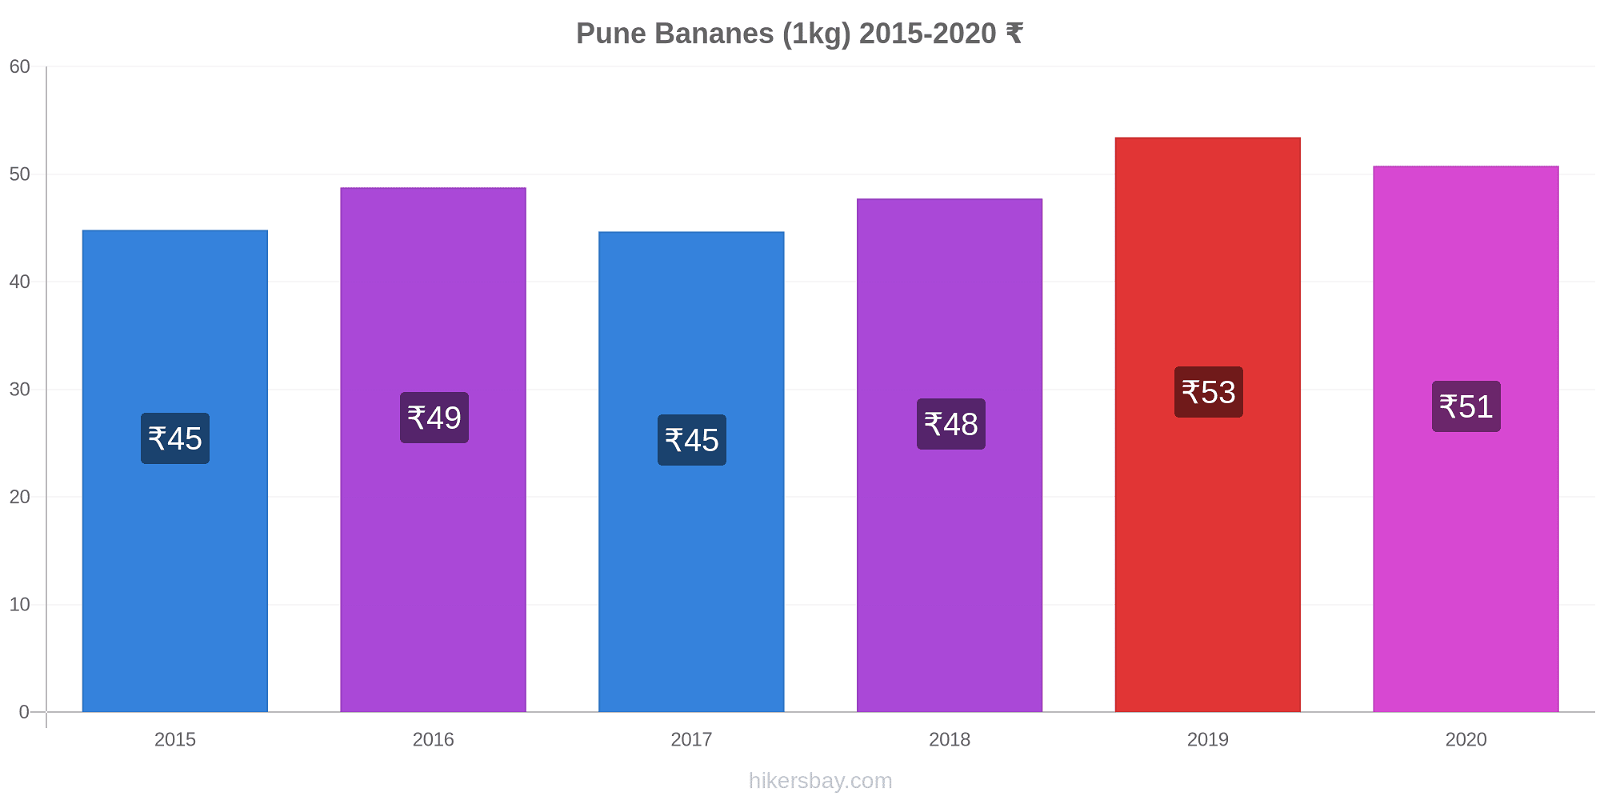 Pune changements de prix Bananes (1kg) hikersbay.com